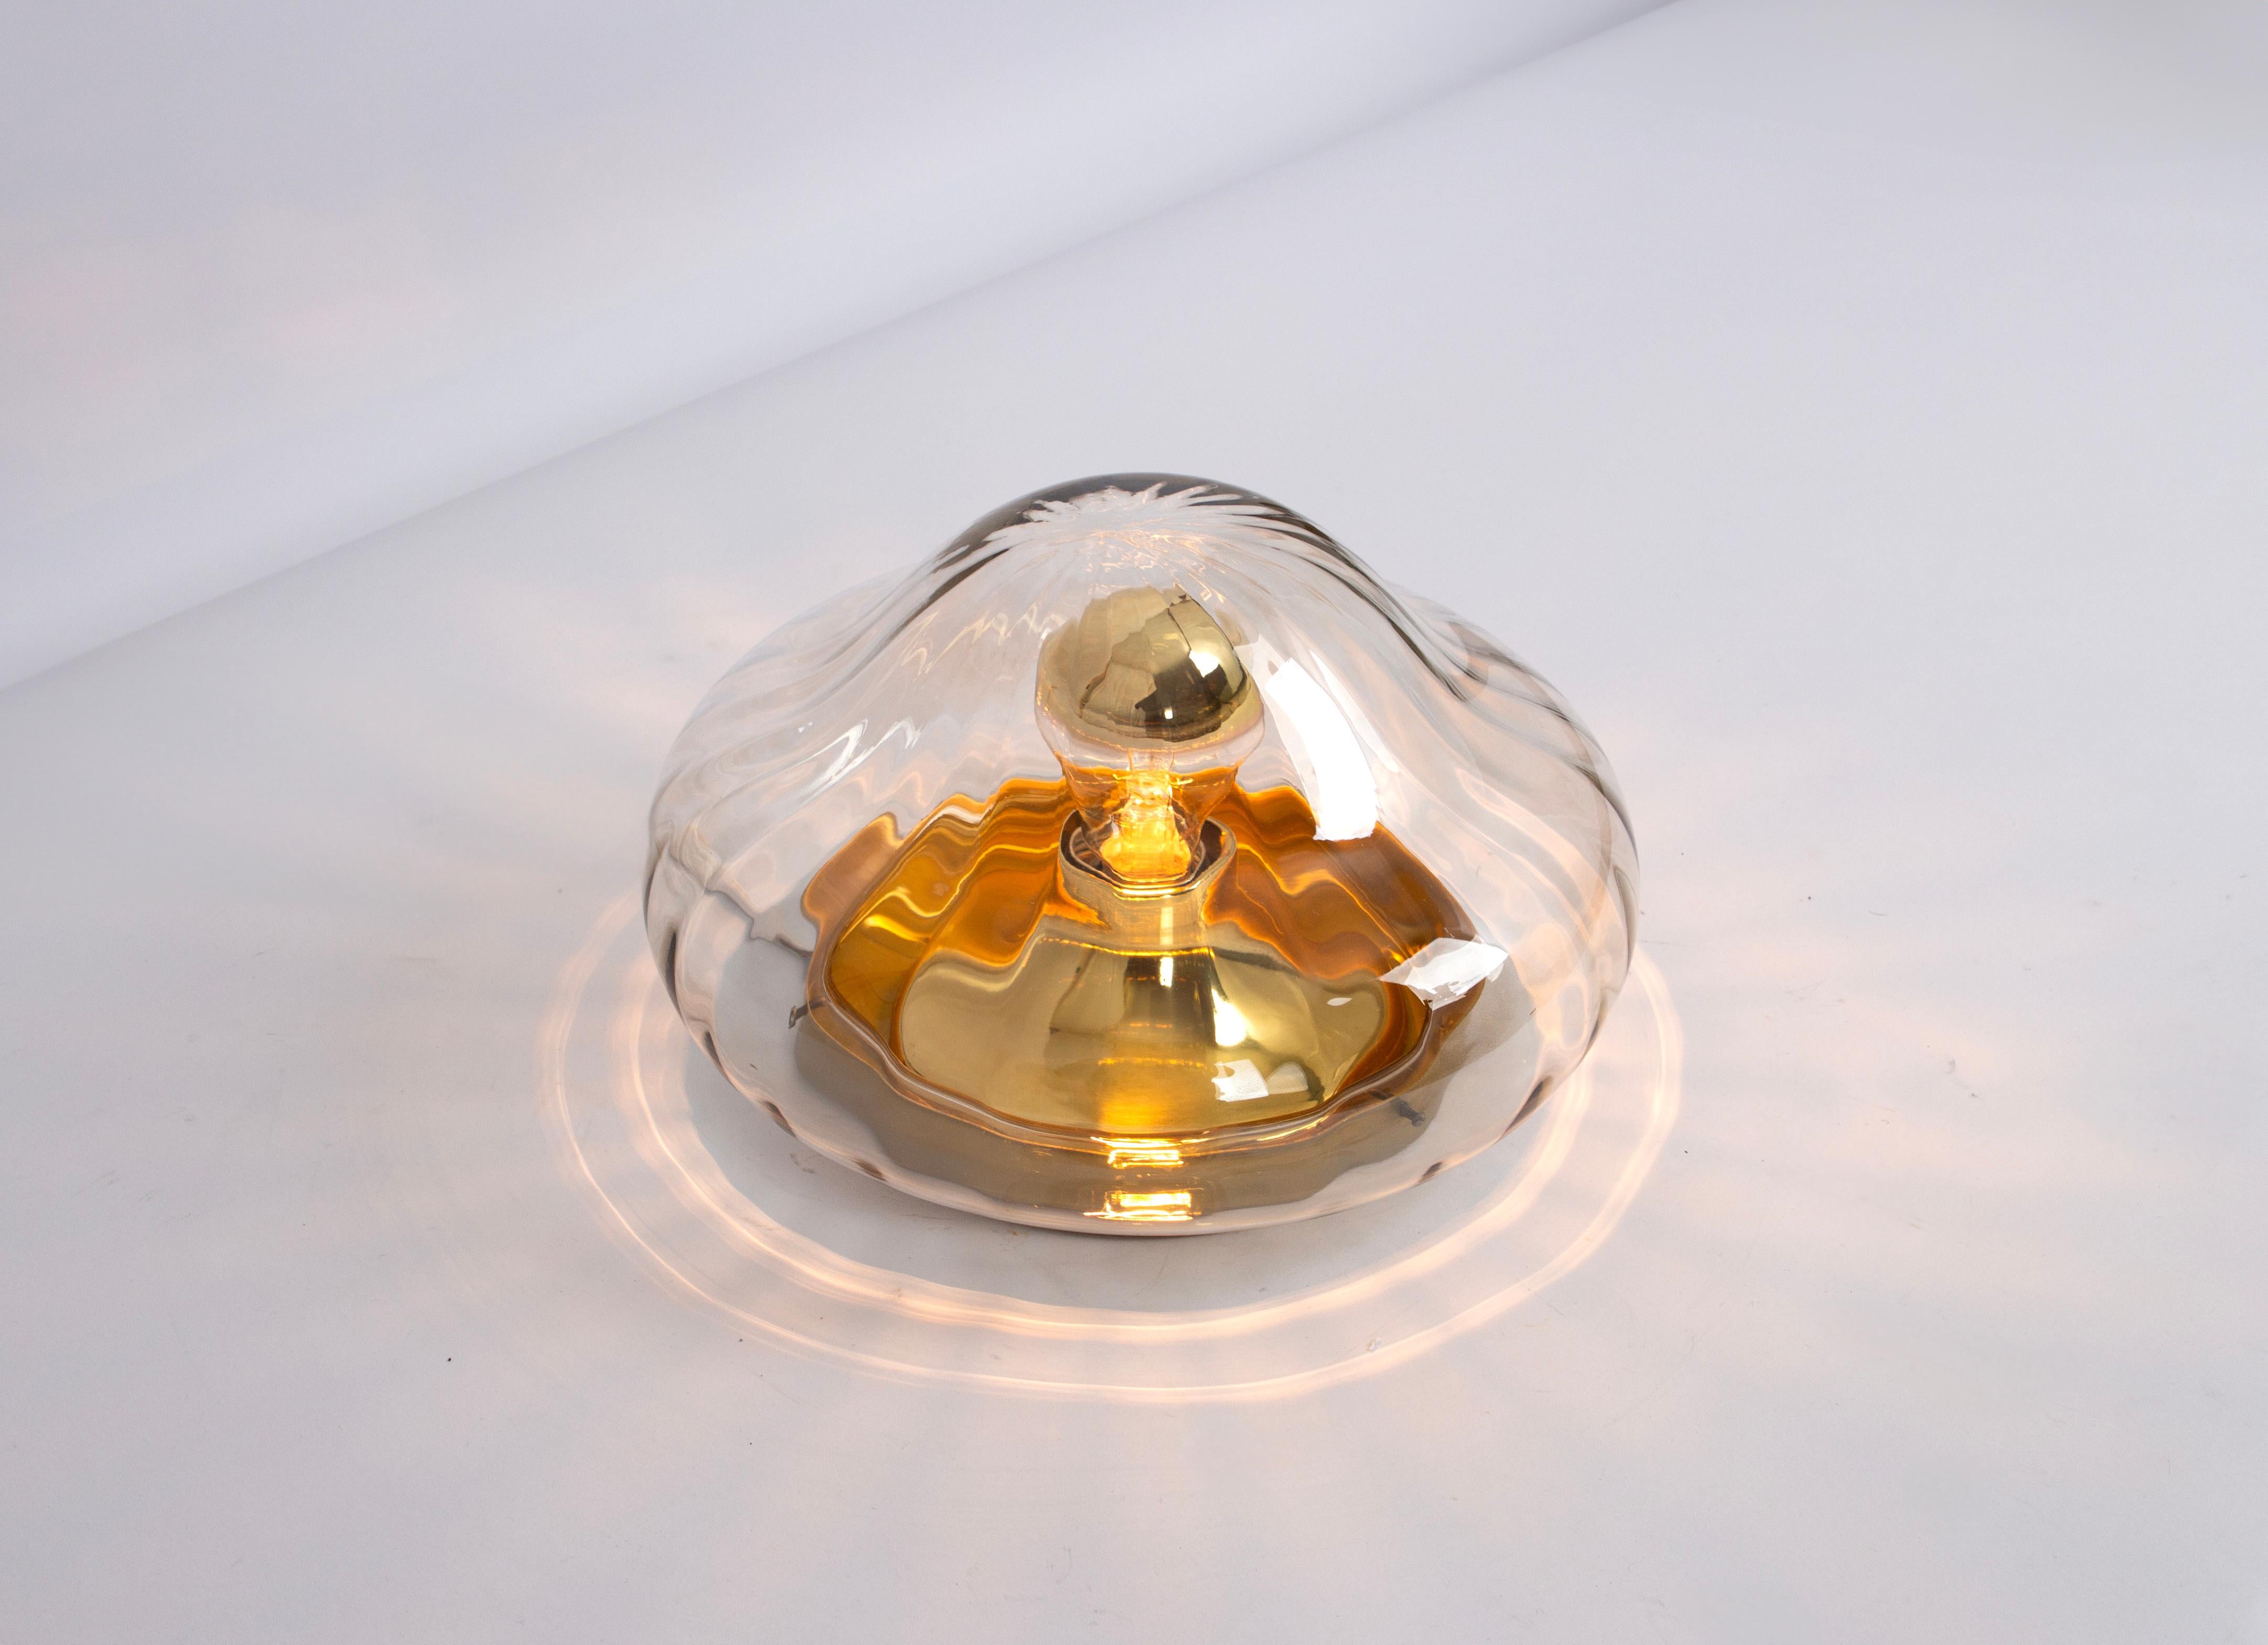 Lampe vintage Sputnik des années 1970 fabriquée en Allemagne, années 1970.
Cette lampe peut être utilisée comme plafonnier ou comme applique murale.
Magnifique forme de verre et effet de lumière.
Douilles : 1 x E27 standard Ampoule.
Les ampoules ne